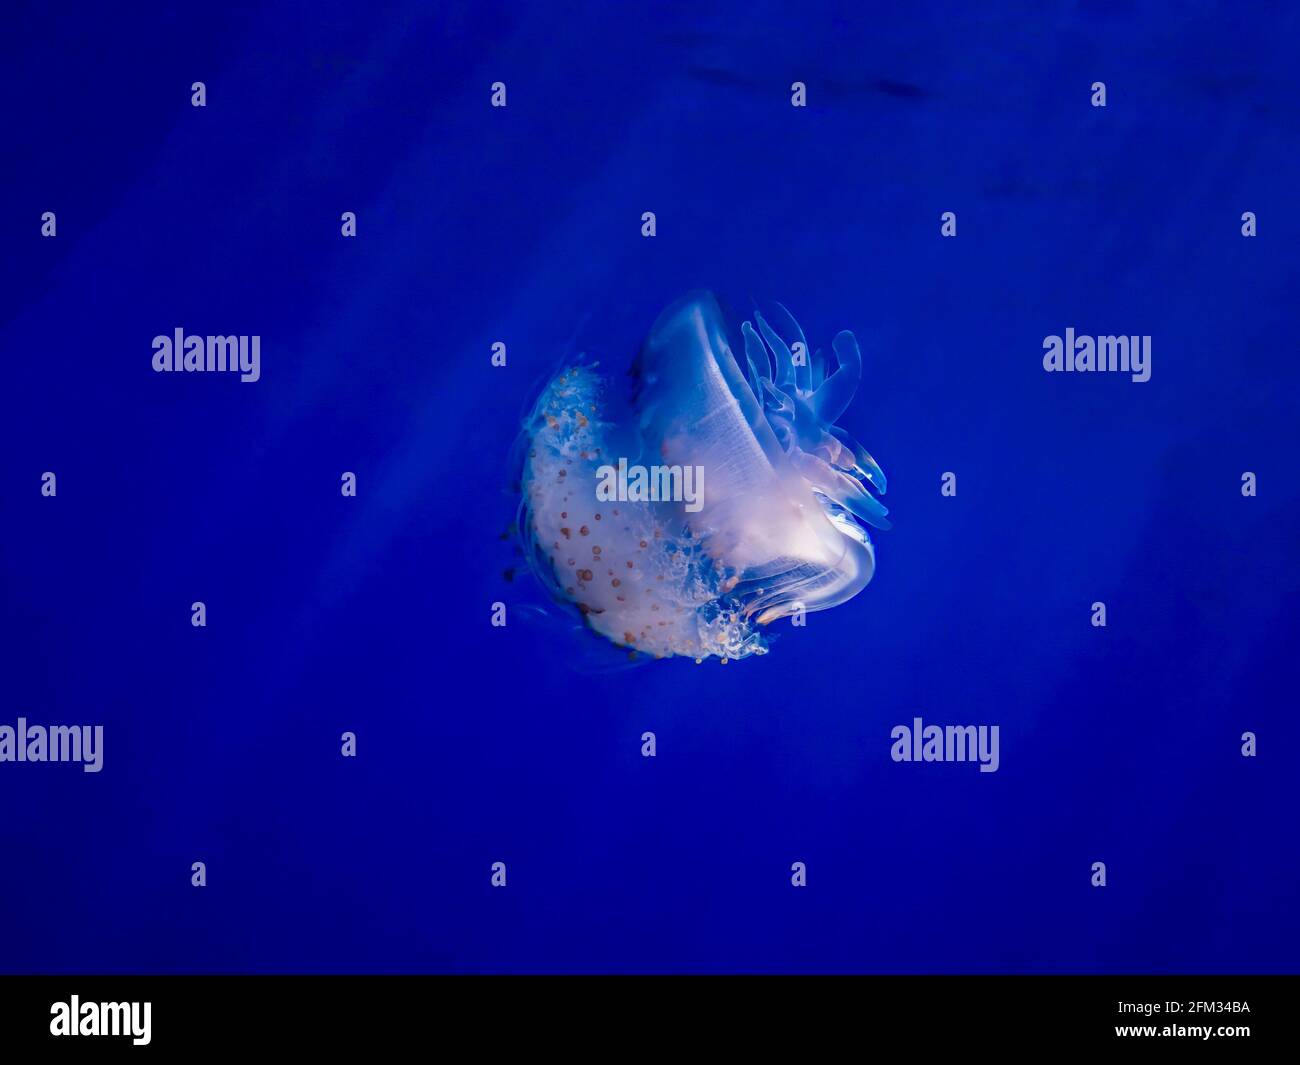 La medusa della corona si illumina di bianco in acque blu profonde con raggi leggeri che penetrano rendendo le tonalità arcobaleno nella medusa. Foto Stock